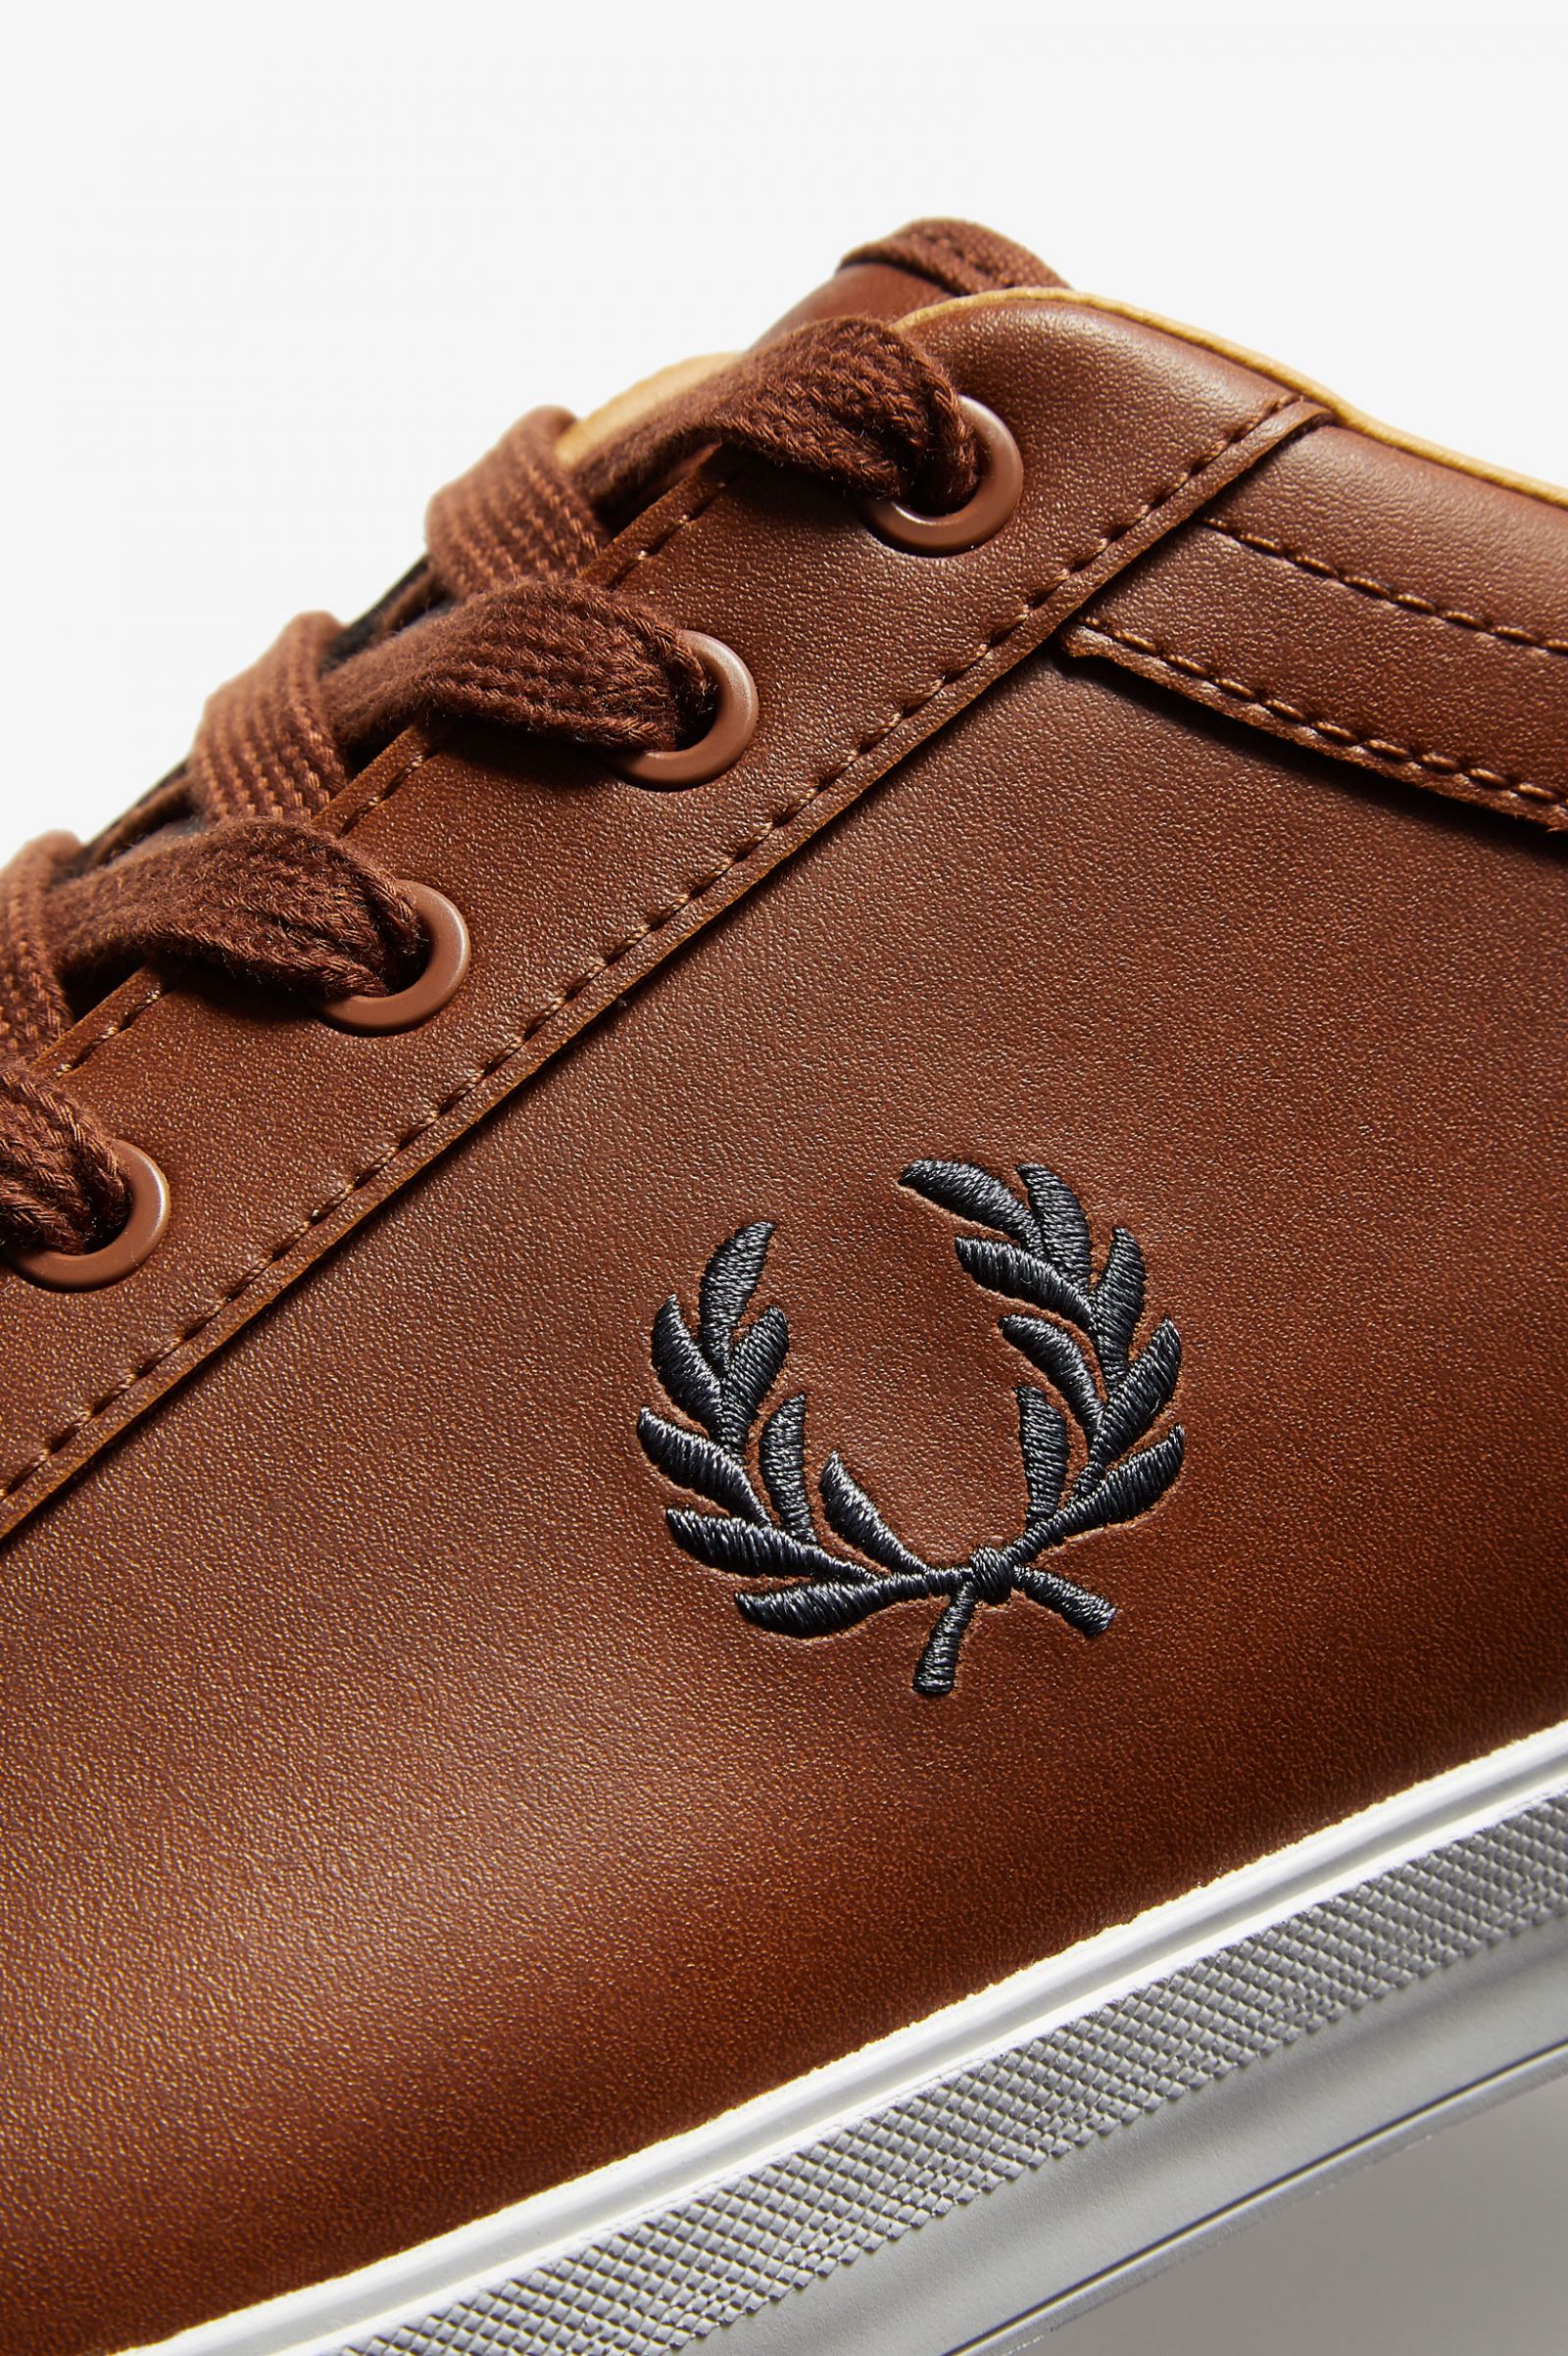 Baseline Leather - Tan | Men's Footwear 